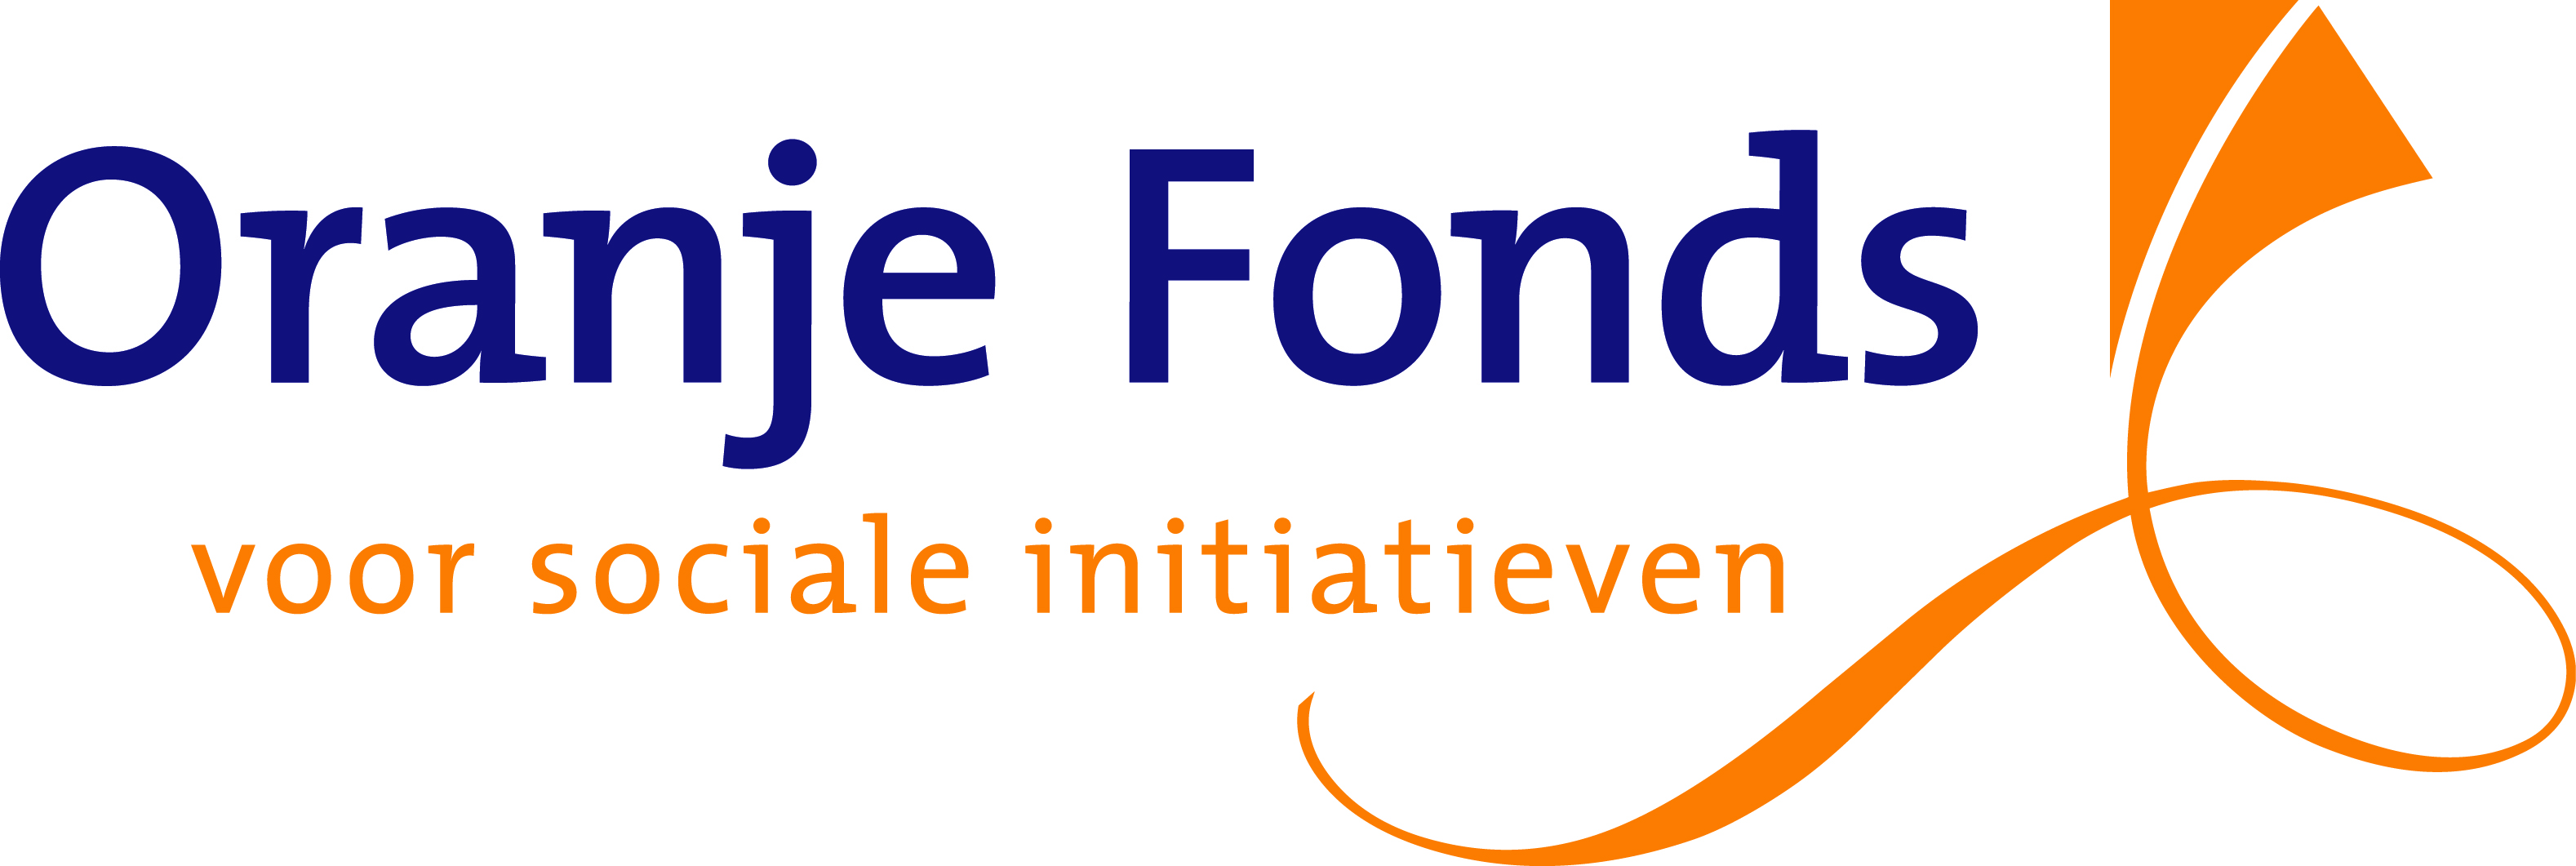 Oranje_Fonds-logo_vsi